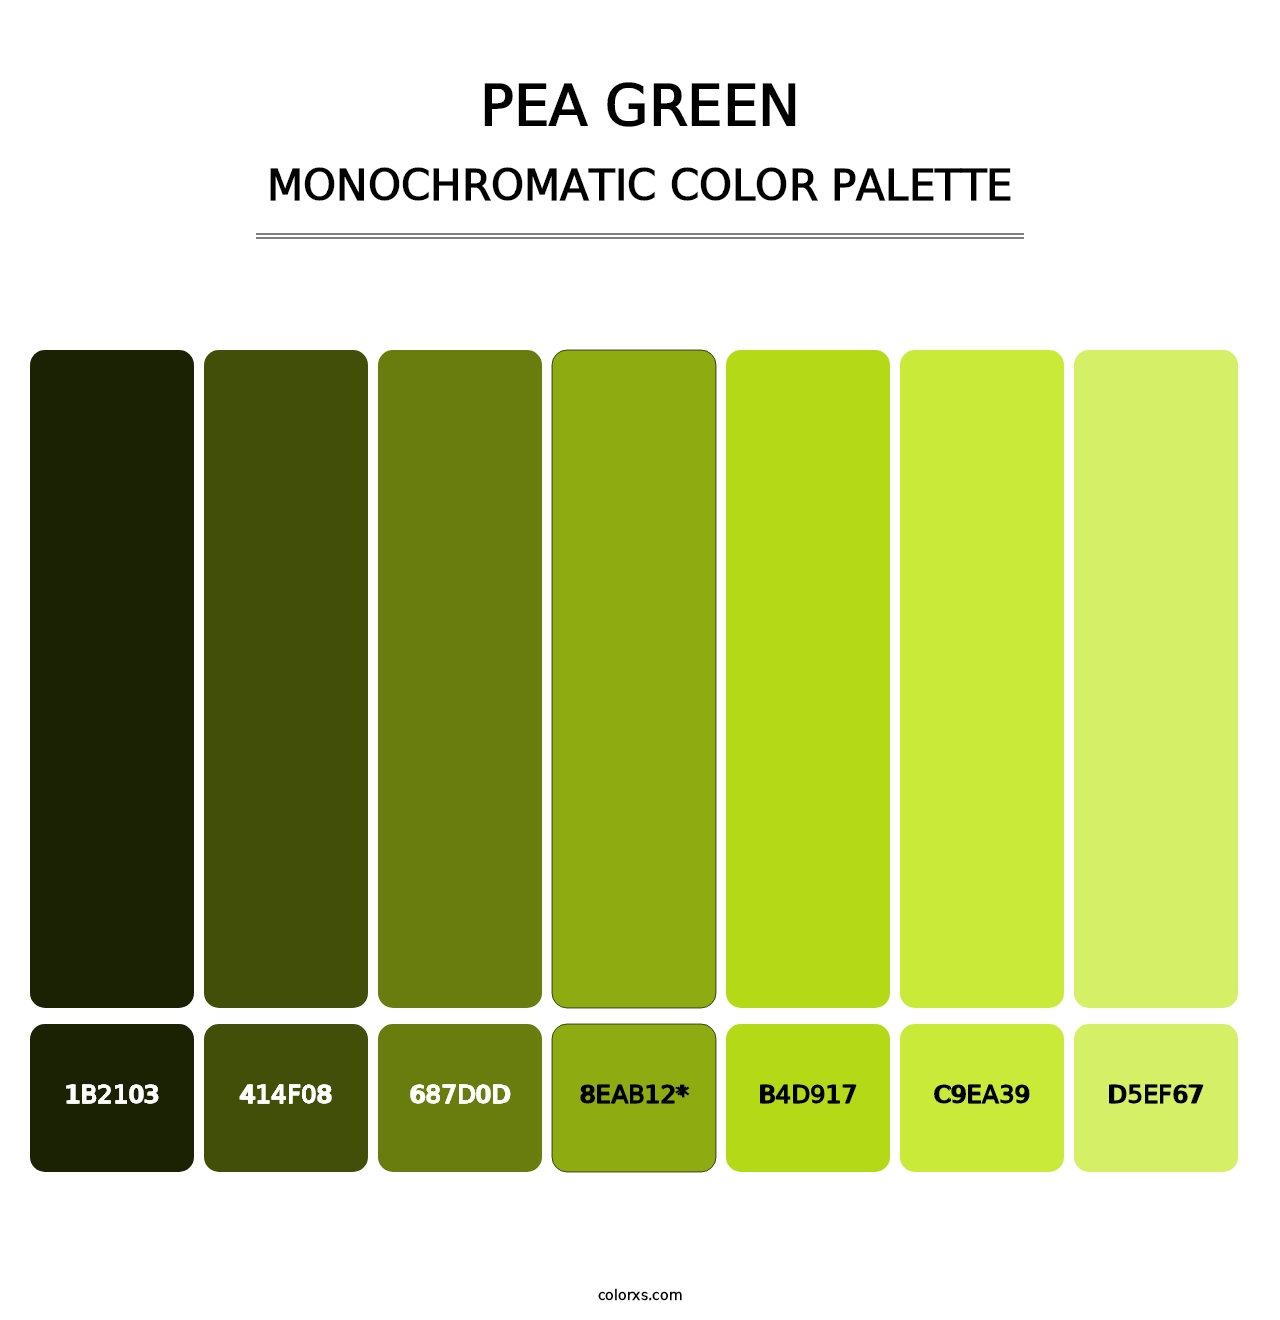 Pea Green - Monochromatic Color Palette